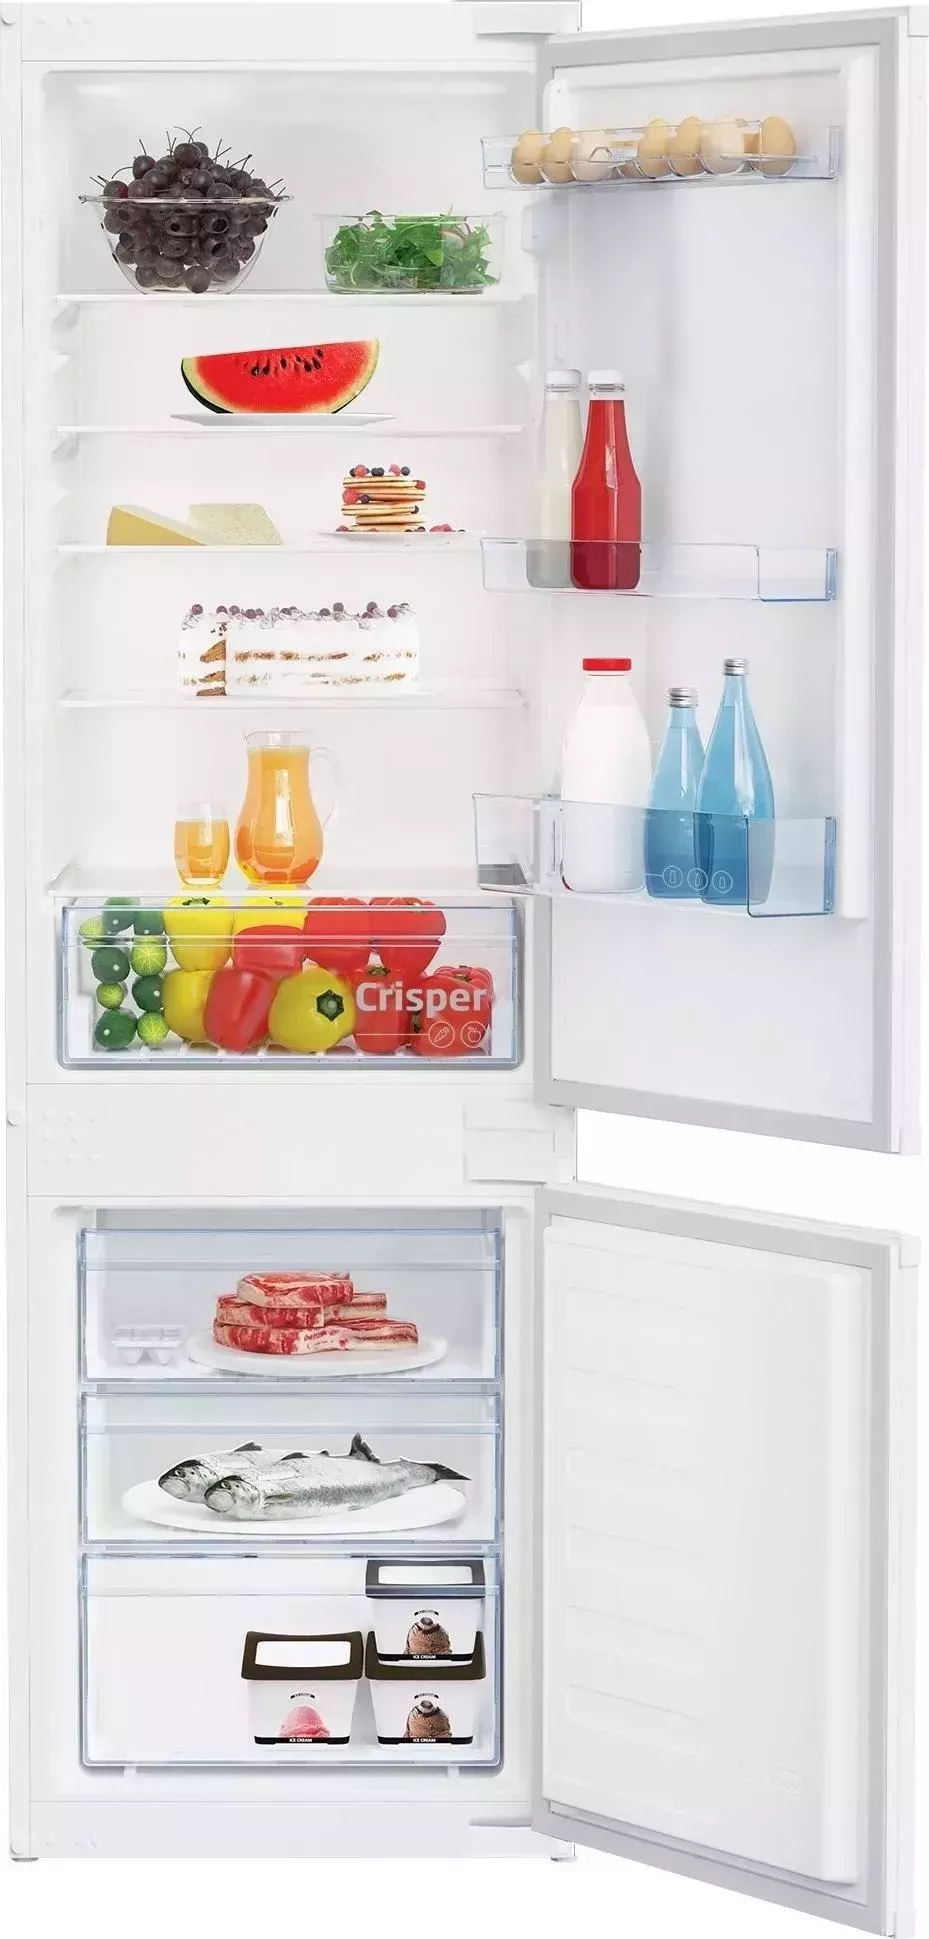 Холодильник встраиваемый BEKO BCSA 2750